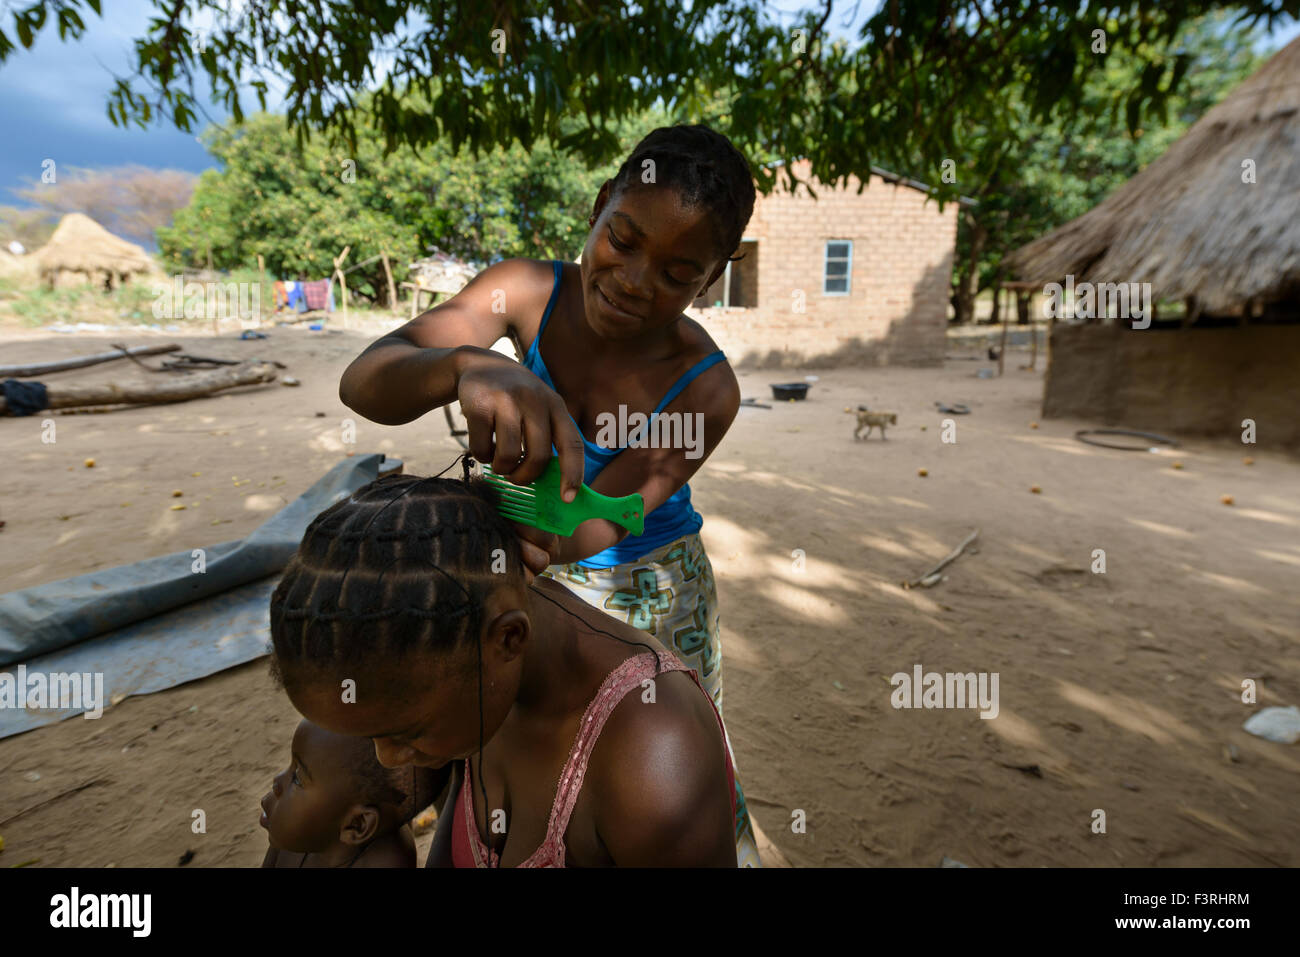 Traditionelle Friseur in einem Dorf, Sambia, Afrika Stockfoto